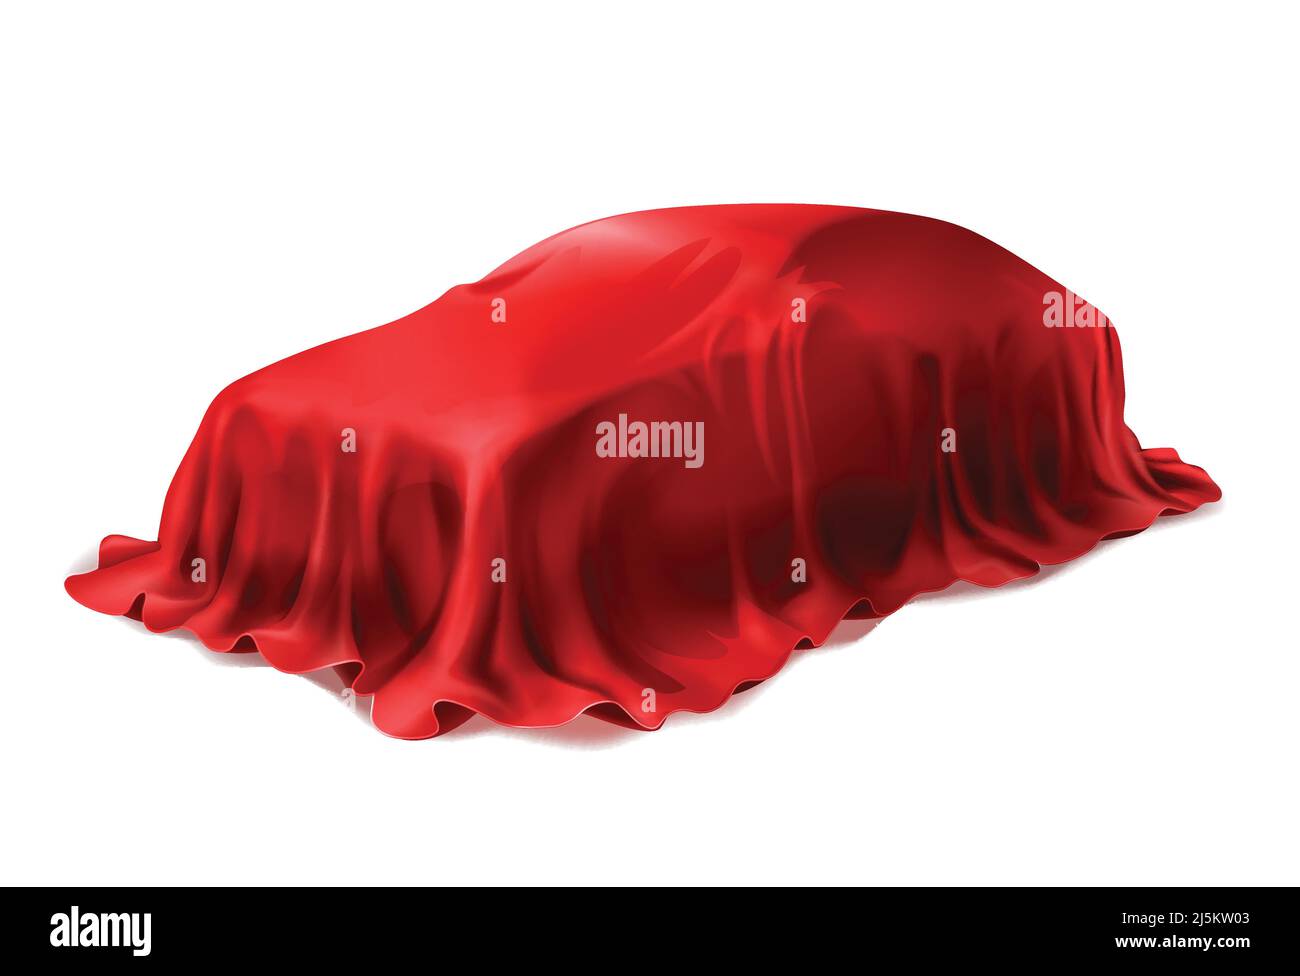 Auto vettoriale realistica ricoperta di seta rossa isolata su sfondo bianco. Presentazione della vettura nuova in concessionaria, auto sorpresa sotto tela scarlatto. Illustrazione Vettoriale